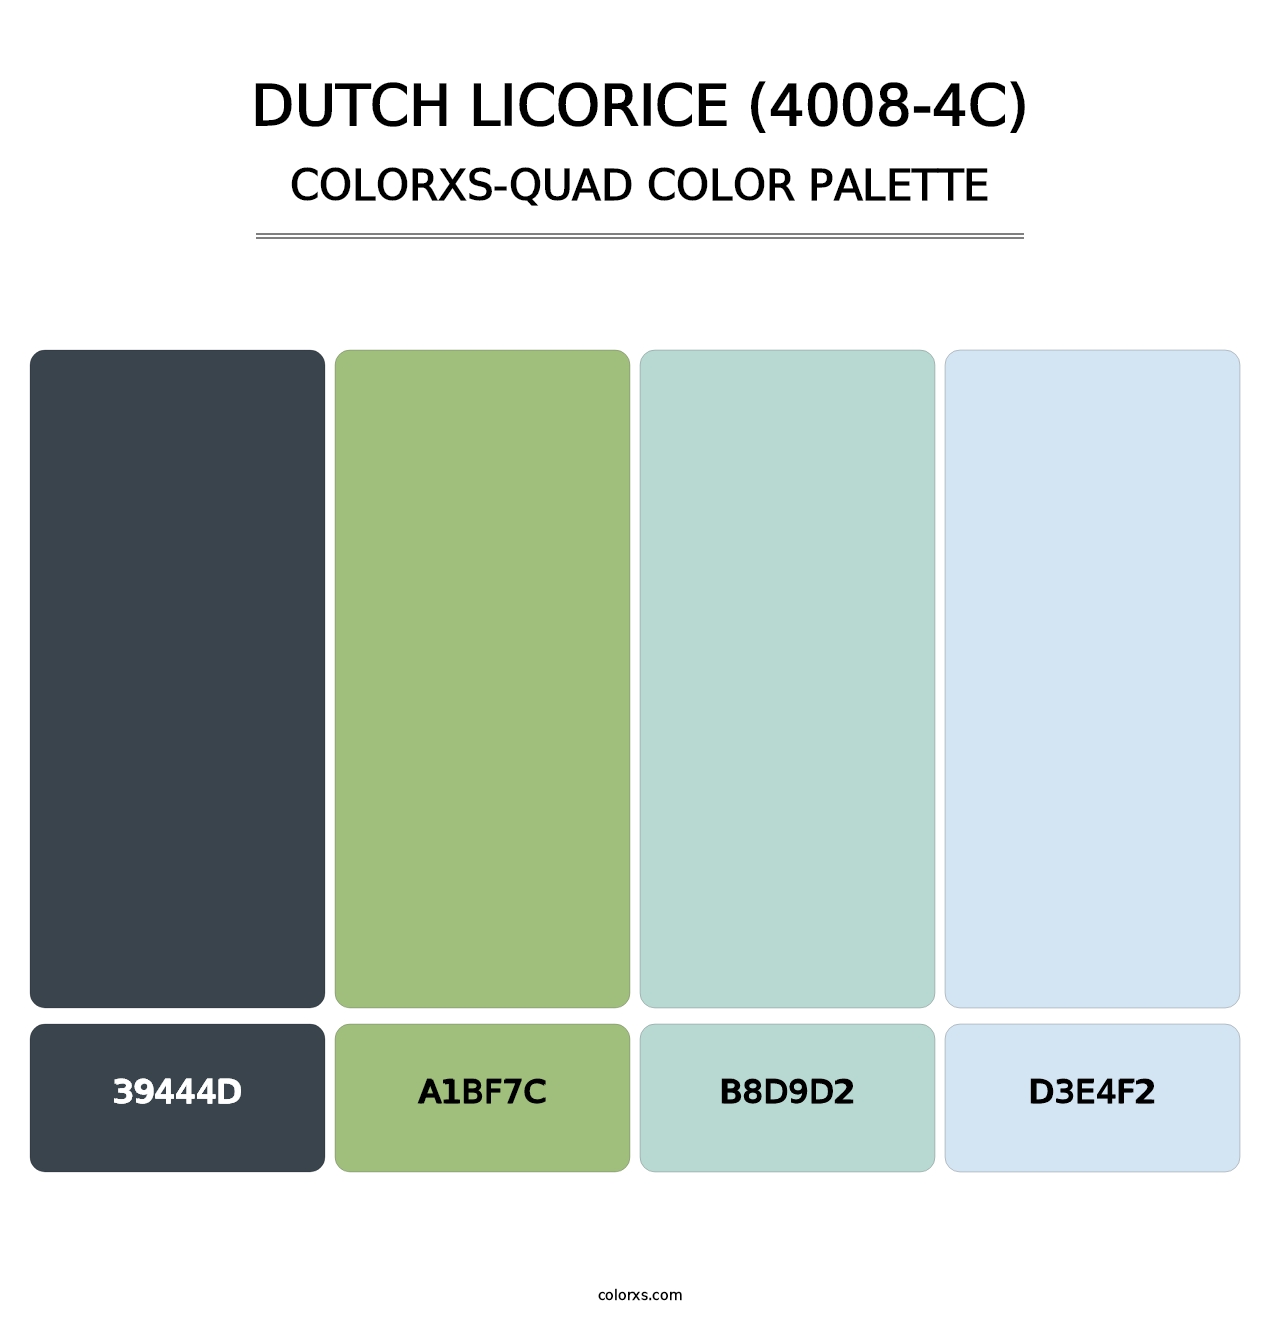 Dutch Licorice (4008-4C) - Colorxs Quad Palette